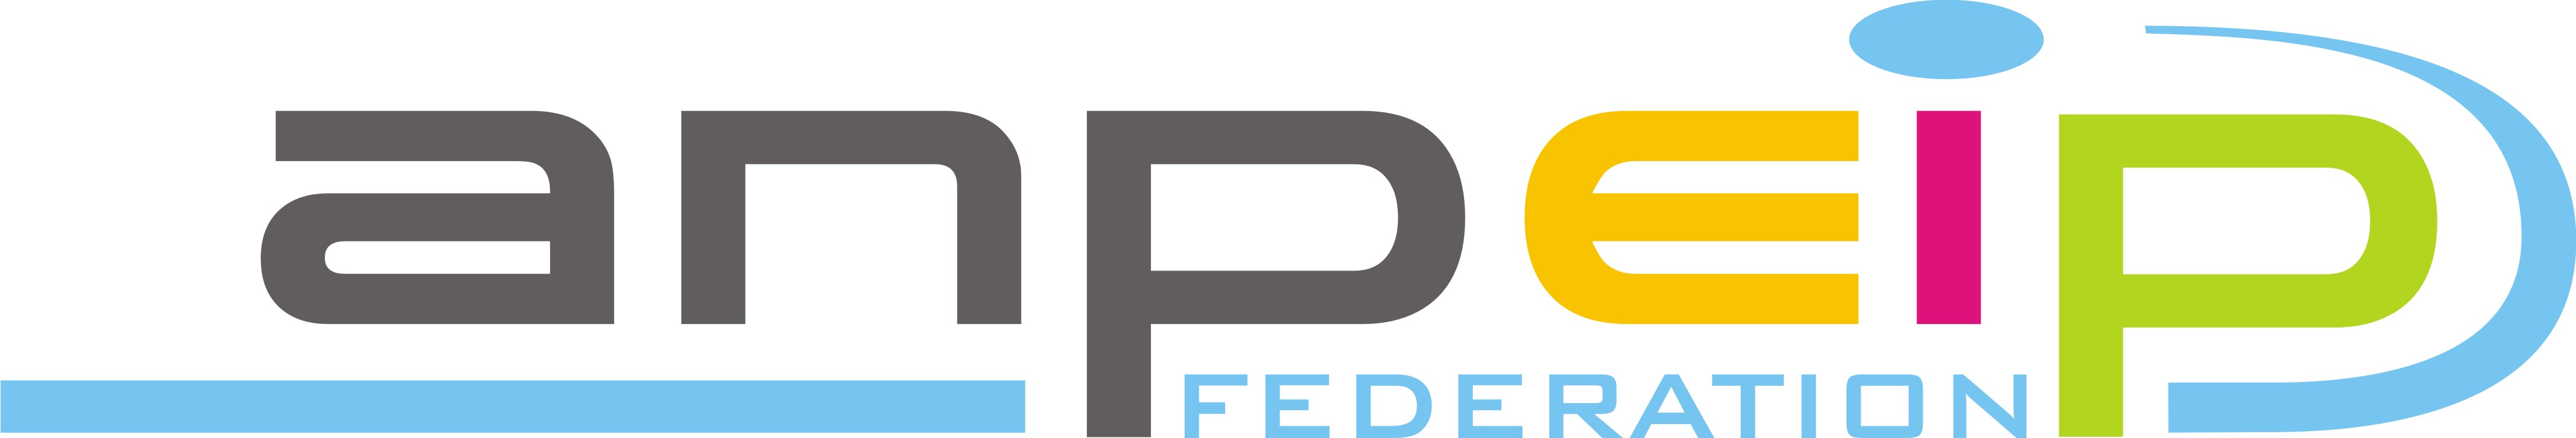 logo federation couleur